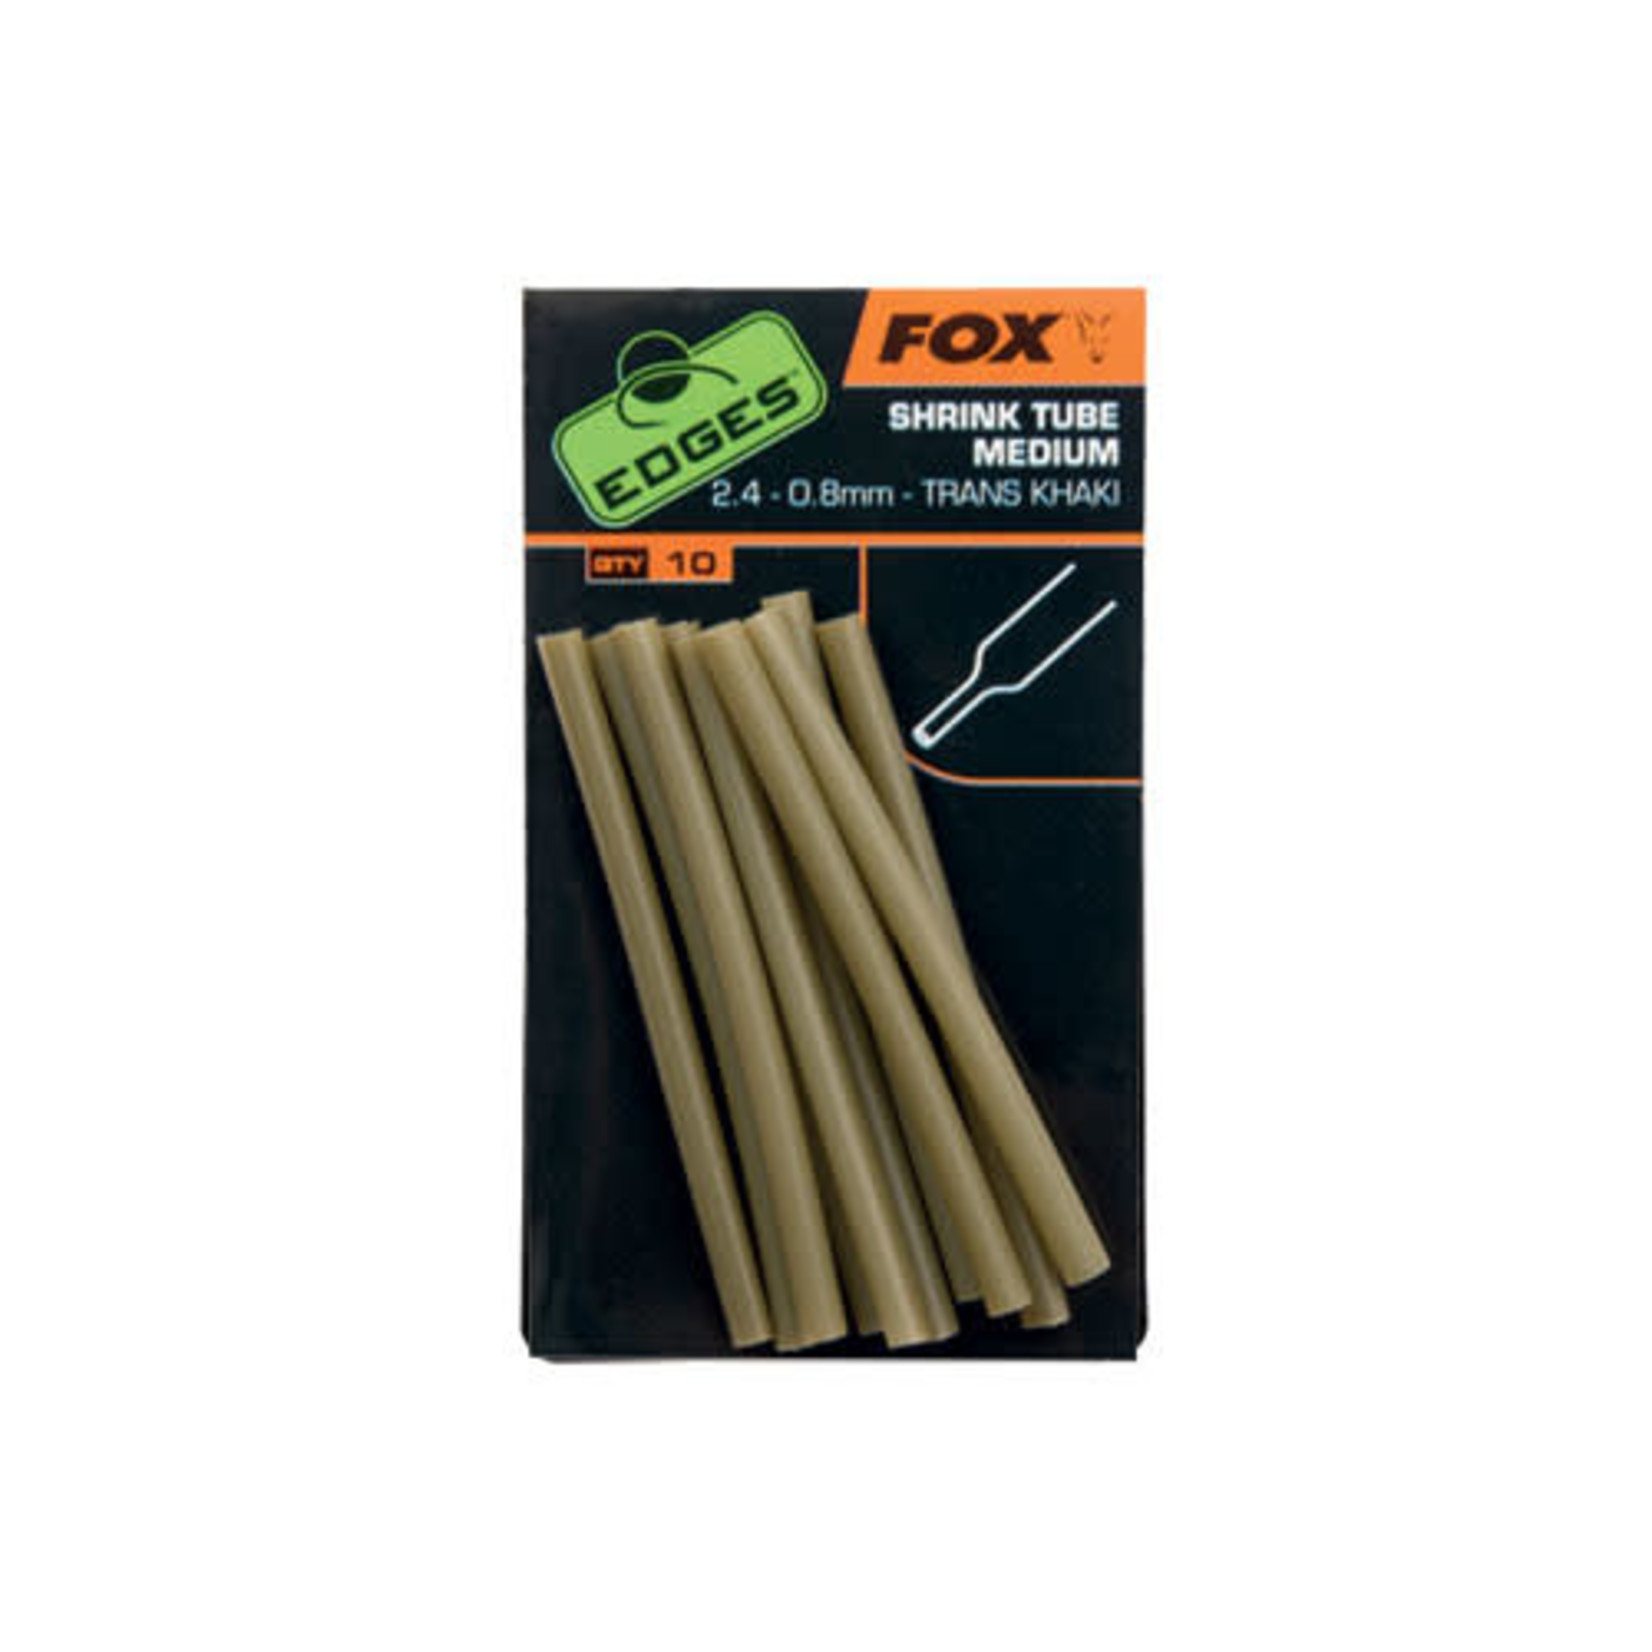 FOX Edges shrink tube medium 2.4-0.8mm trans khaki